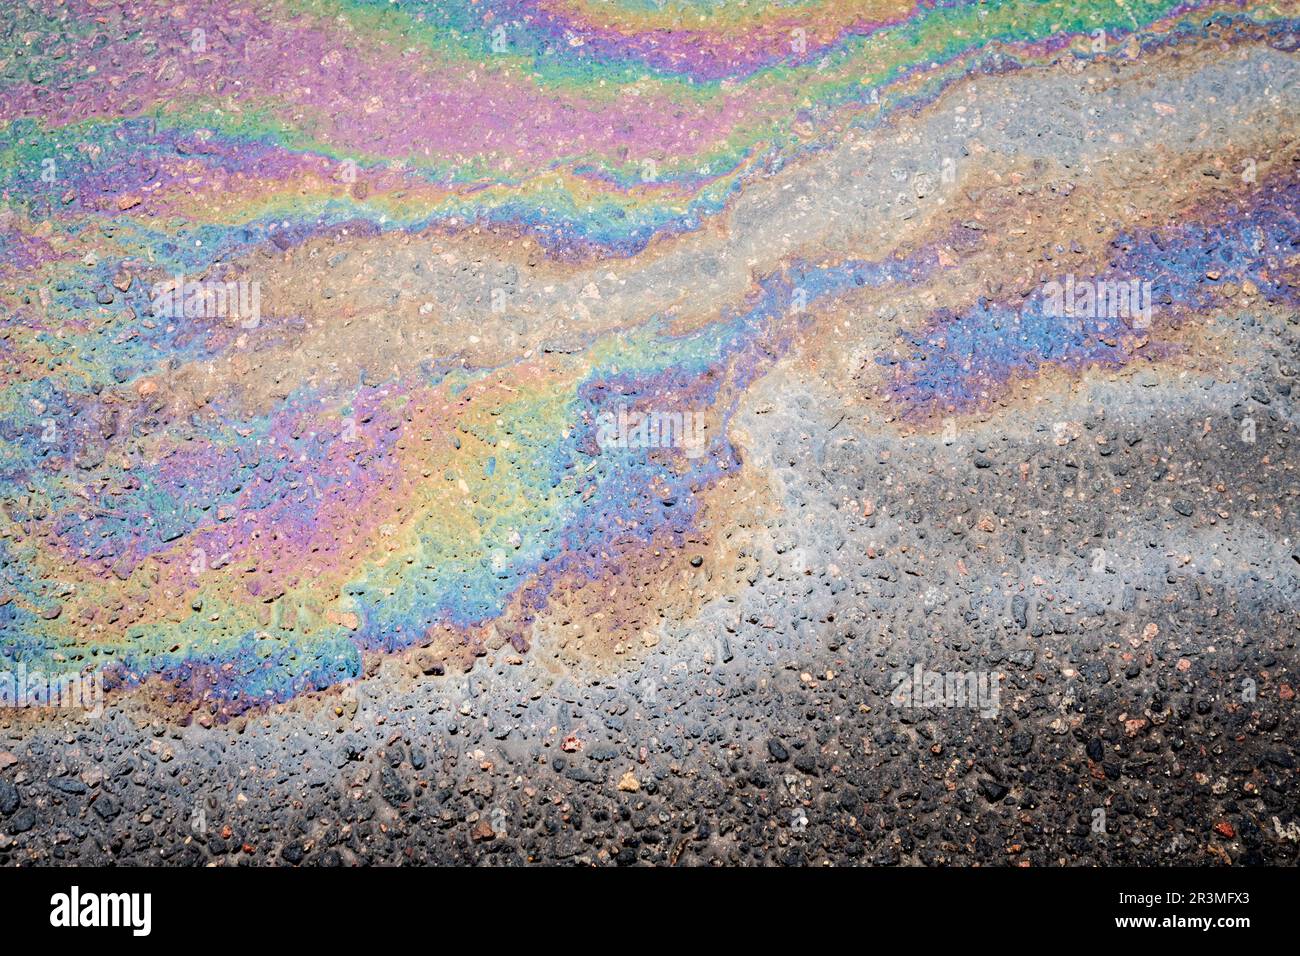 Macchie di olio su asfalto bagnato. Il concetto di inquinamento ambientale, fuoriuscite di petrolio e problemi ambientali. Foto Stock